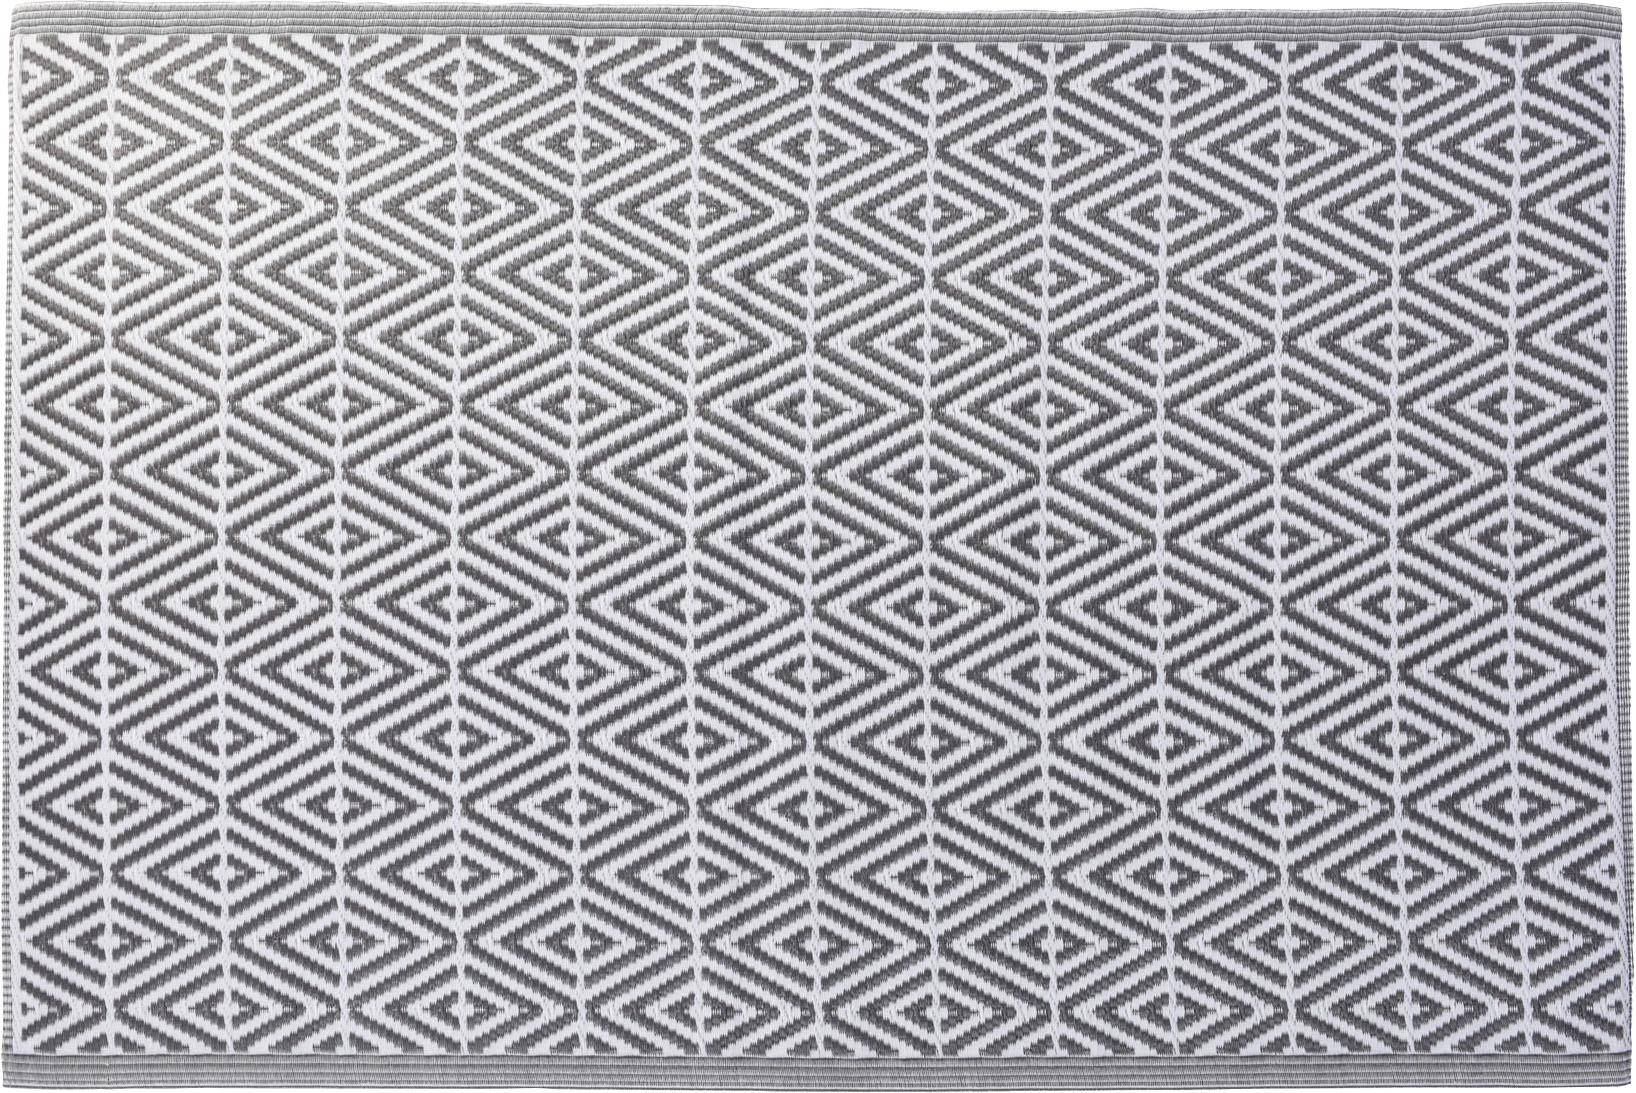 Outdoorteppich Grau/Weiß 120x180 cm - Weiß/Grau, Basics, Textil (120/180cm)